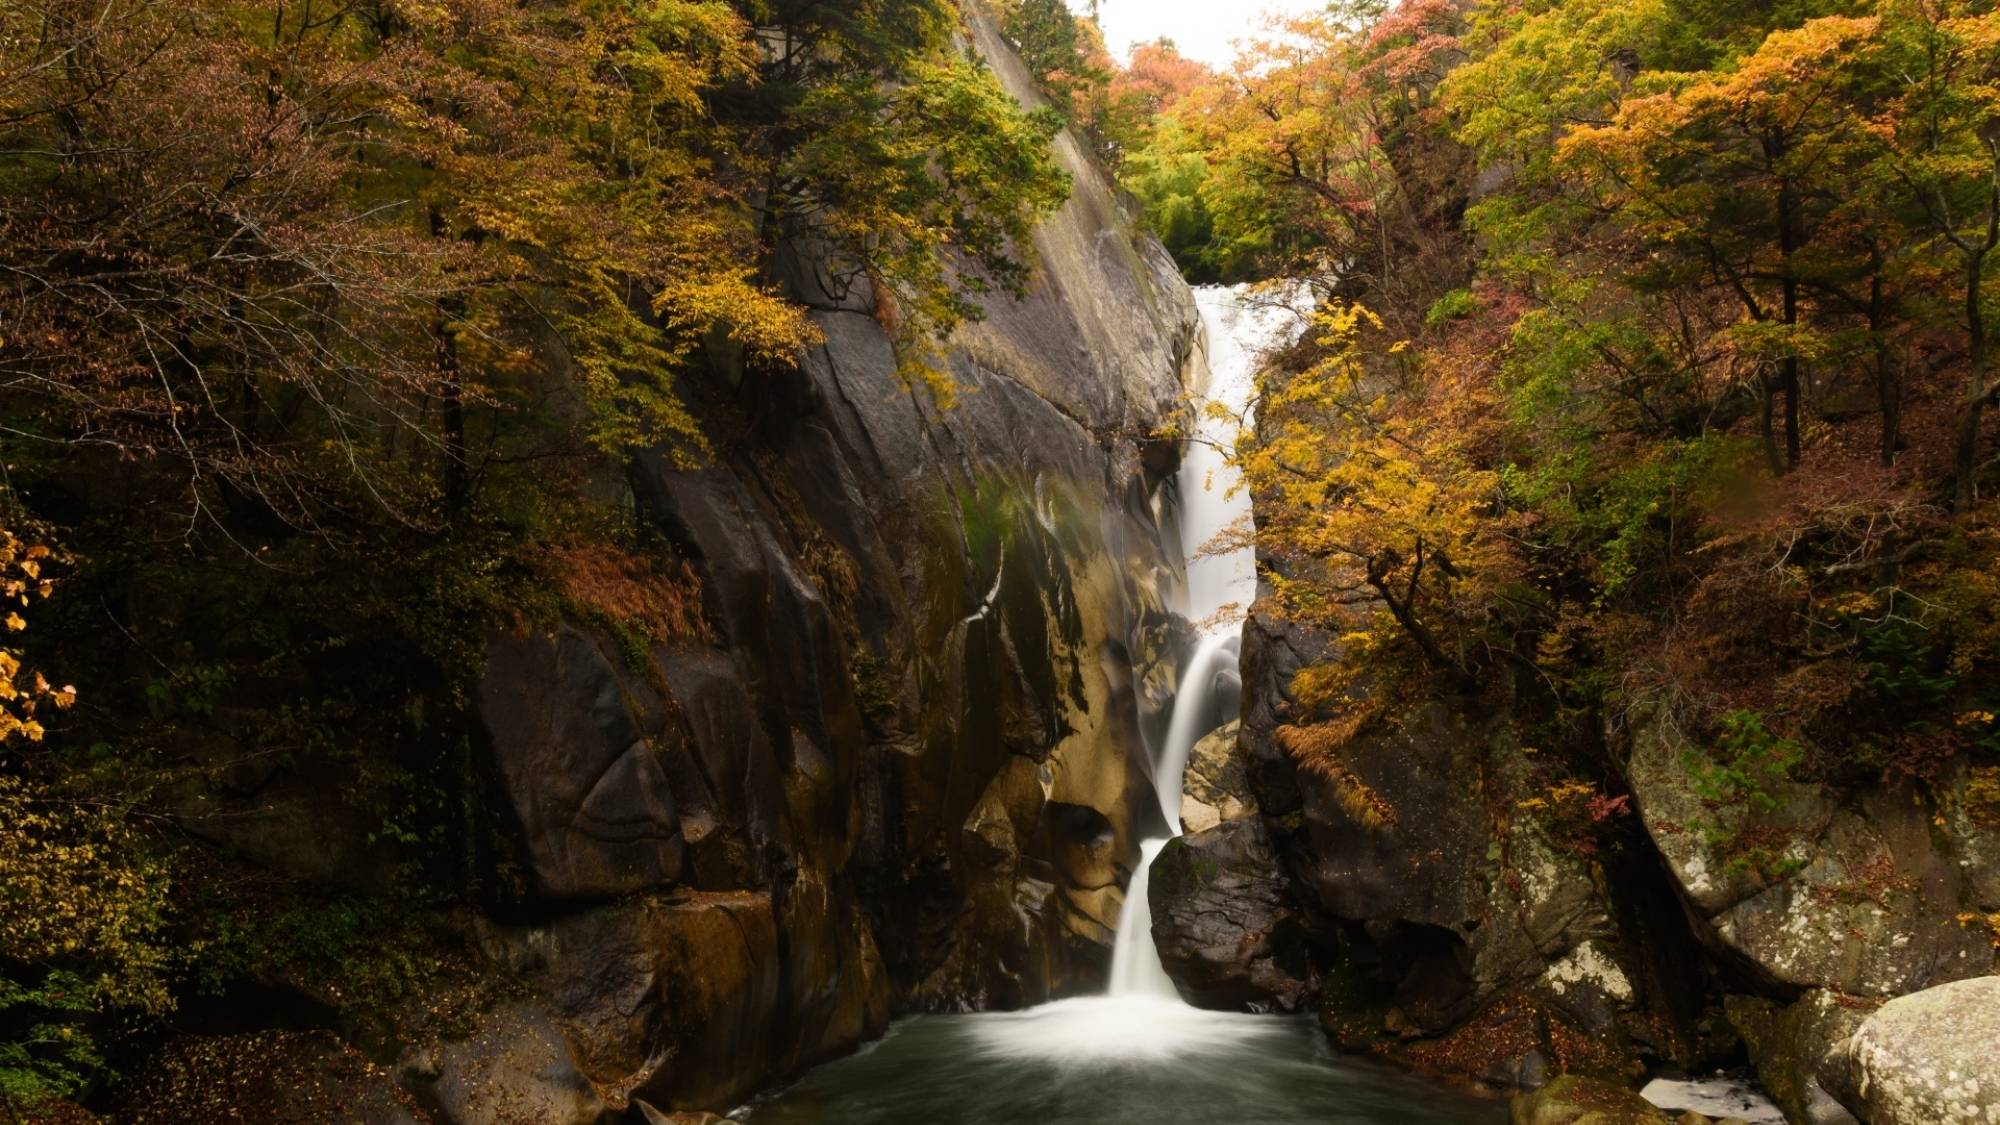 「日本一の渓谷美」といわれる昇仙峡。秋には燃えるような紅に染まった美しい渓谷を見ることができます。